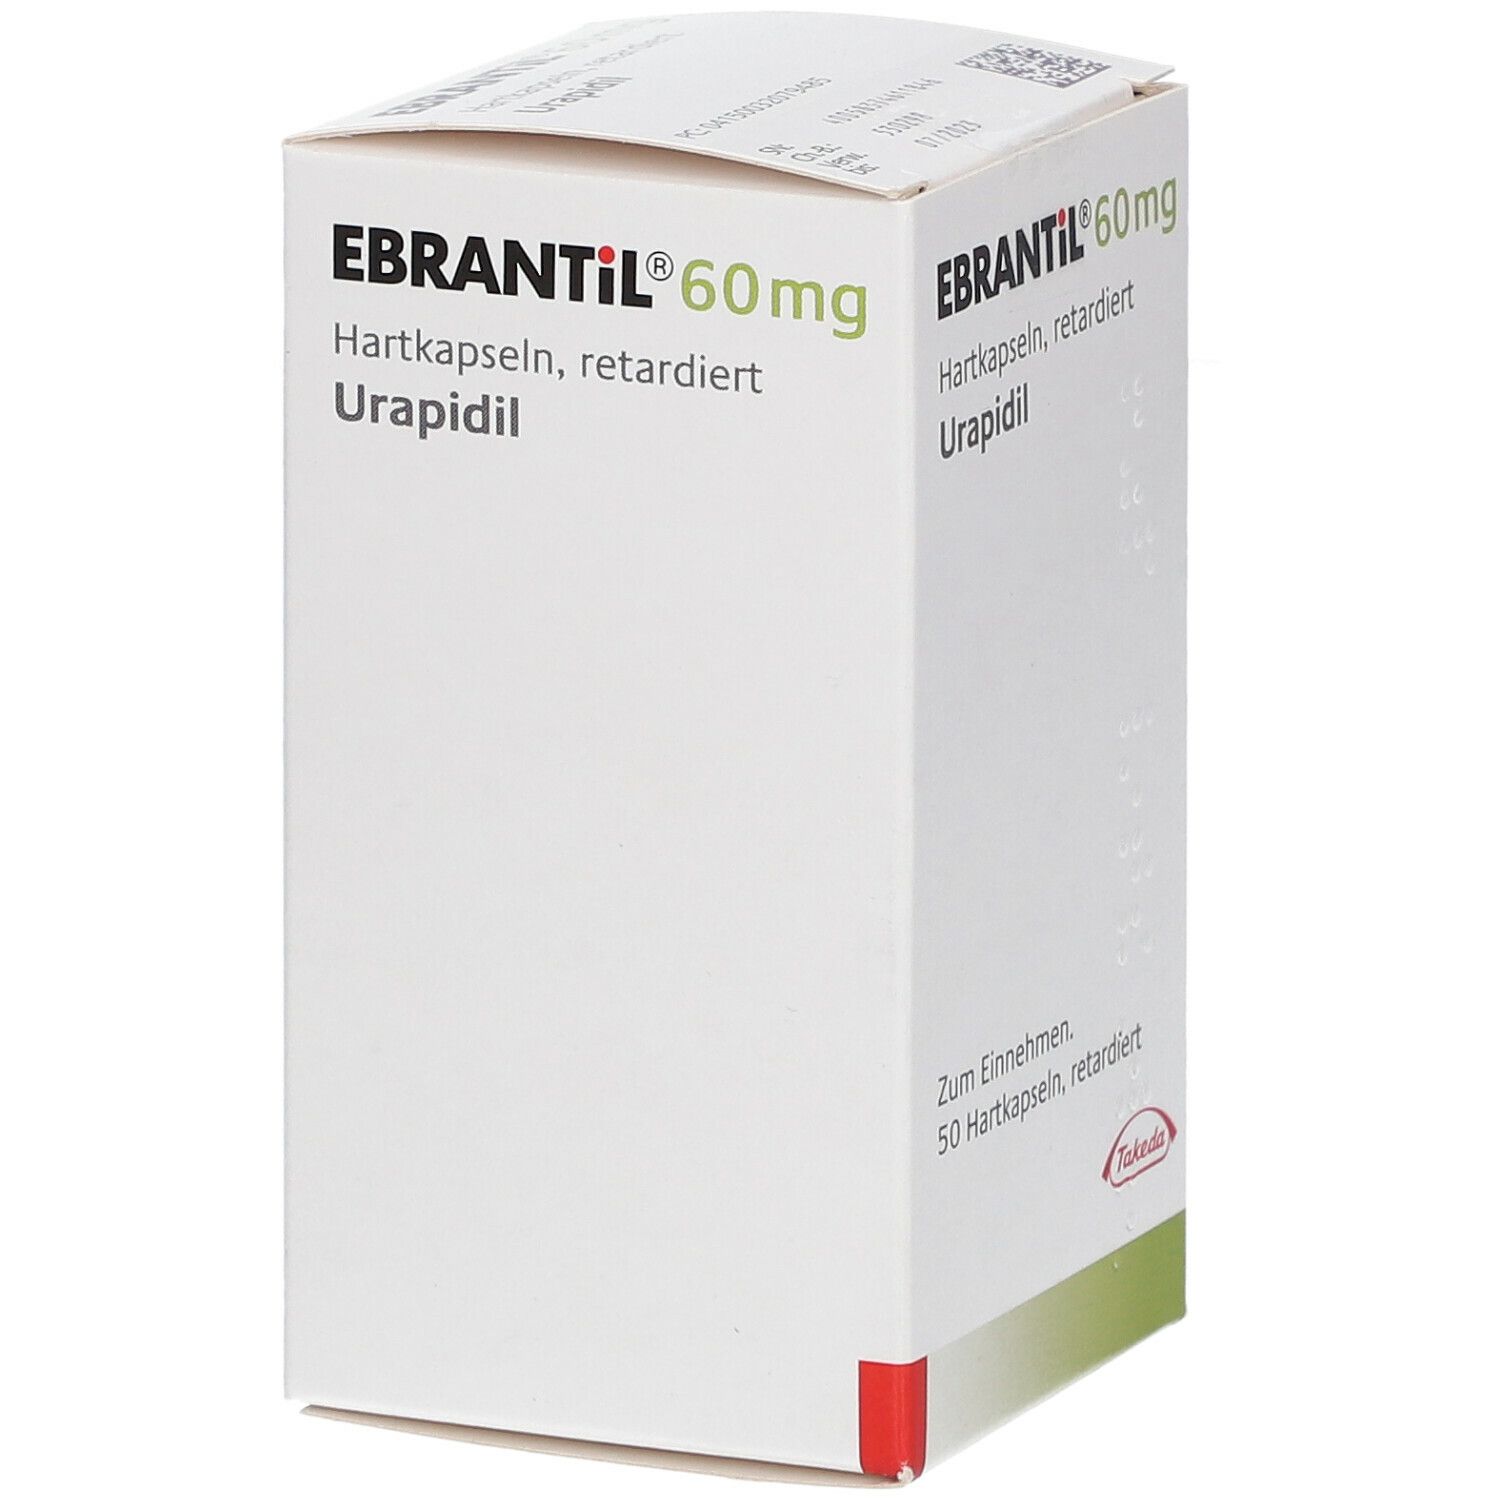 Ebrantil® 60 mg